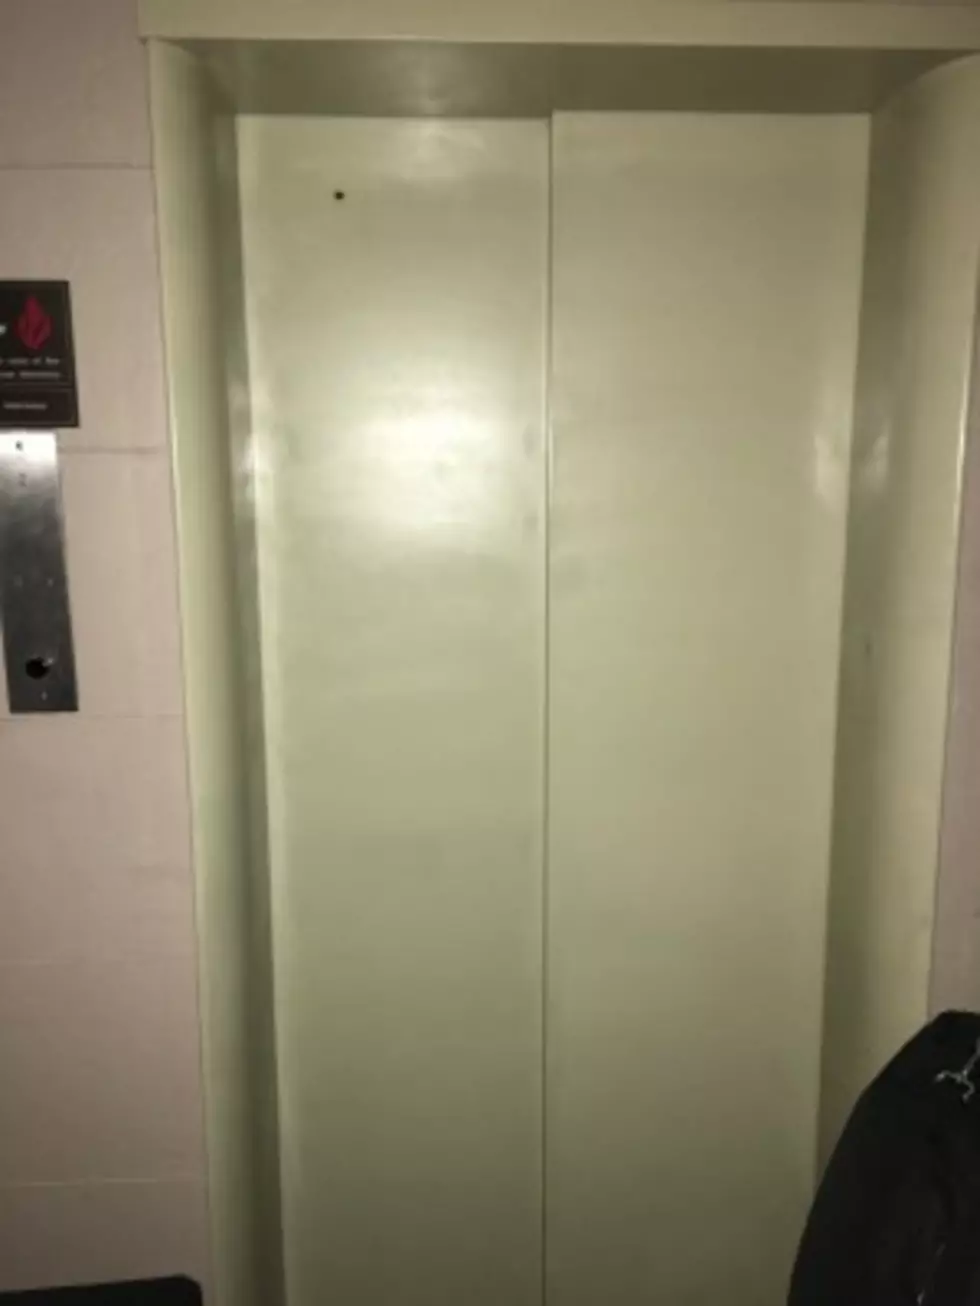 My Elevator Nightmare